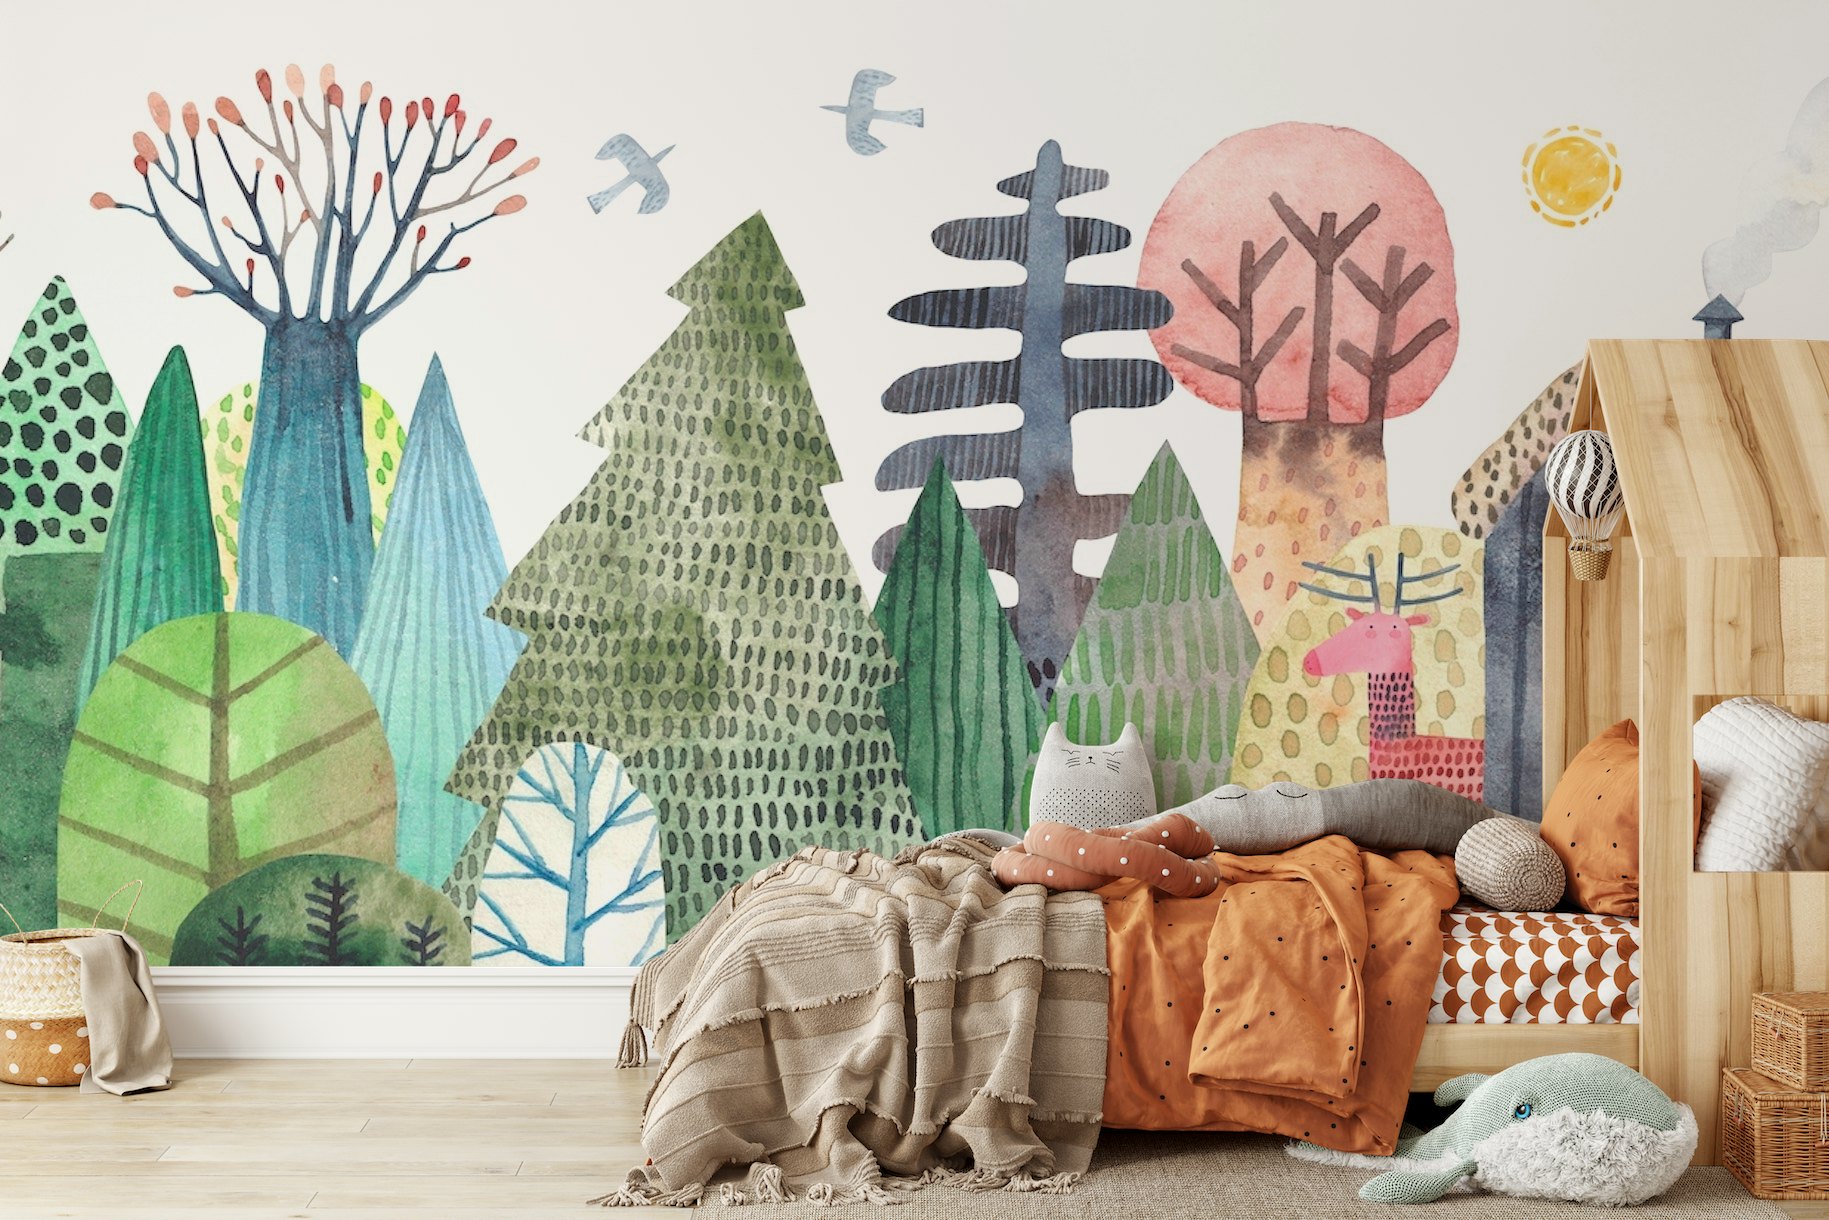 Magical forest landscape papel pintado